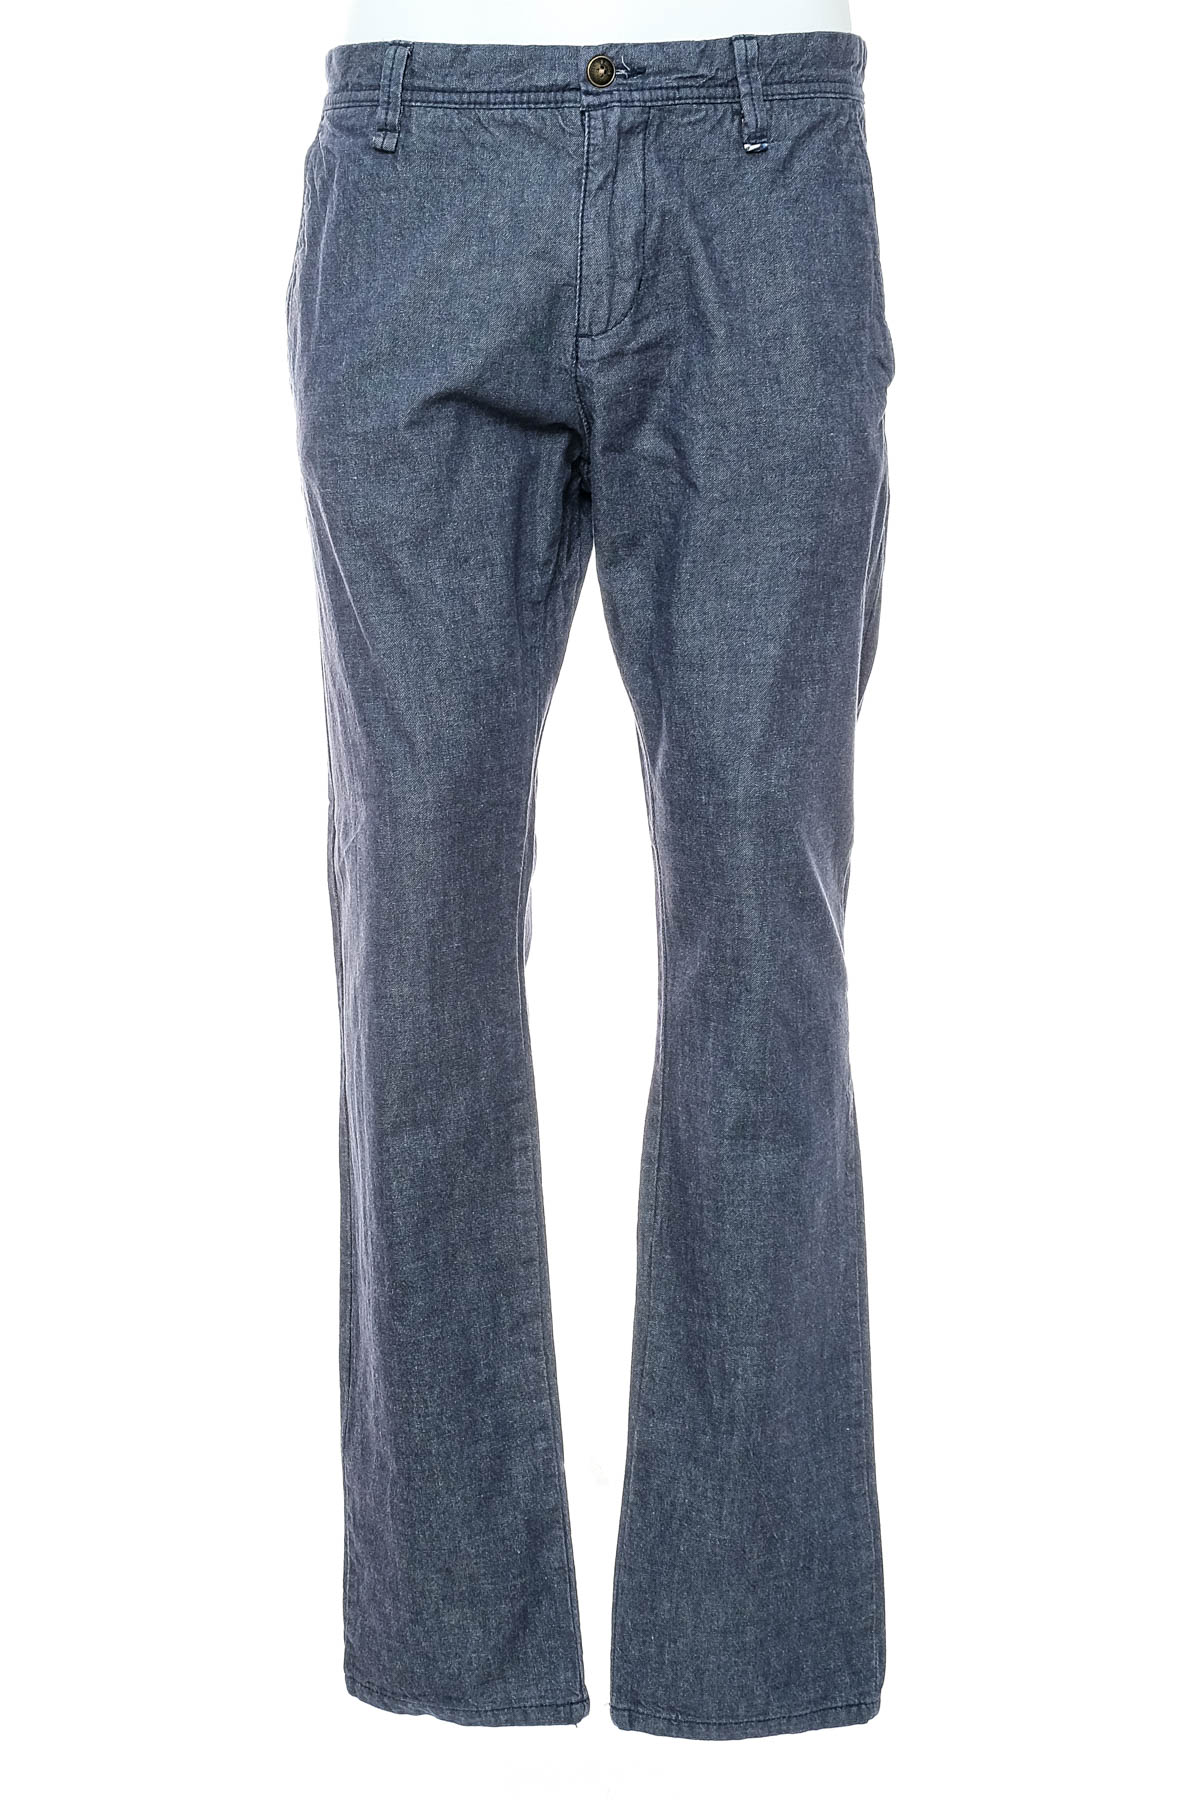 Jeans pentru bărbăți - S.Oliver - 0